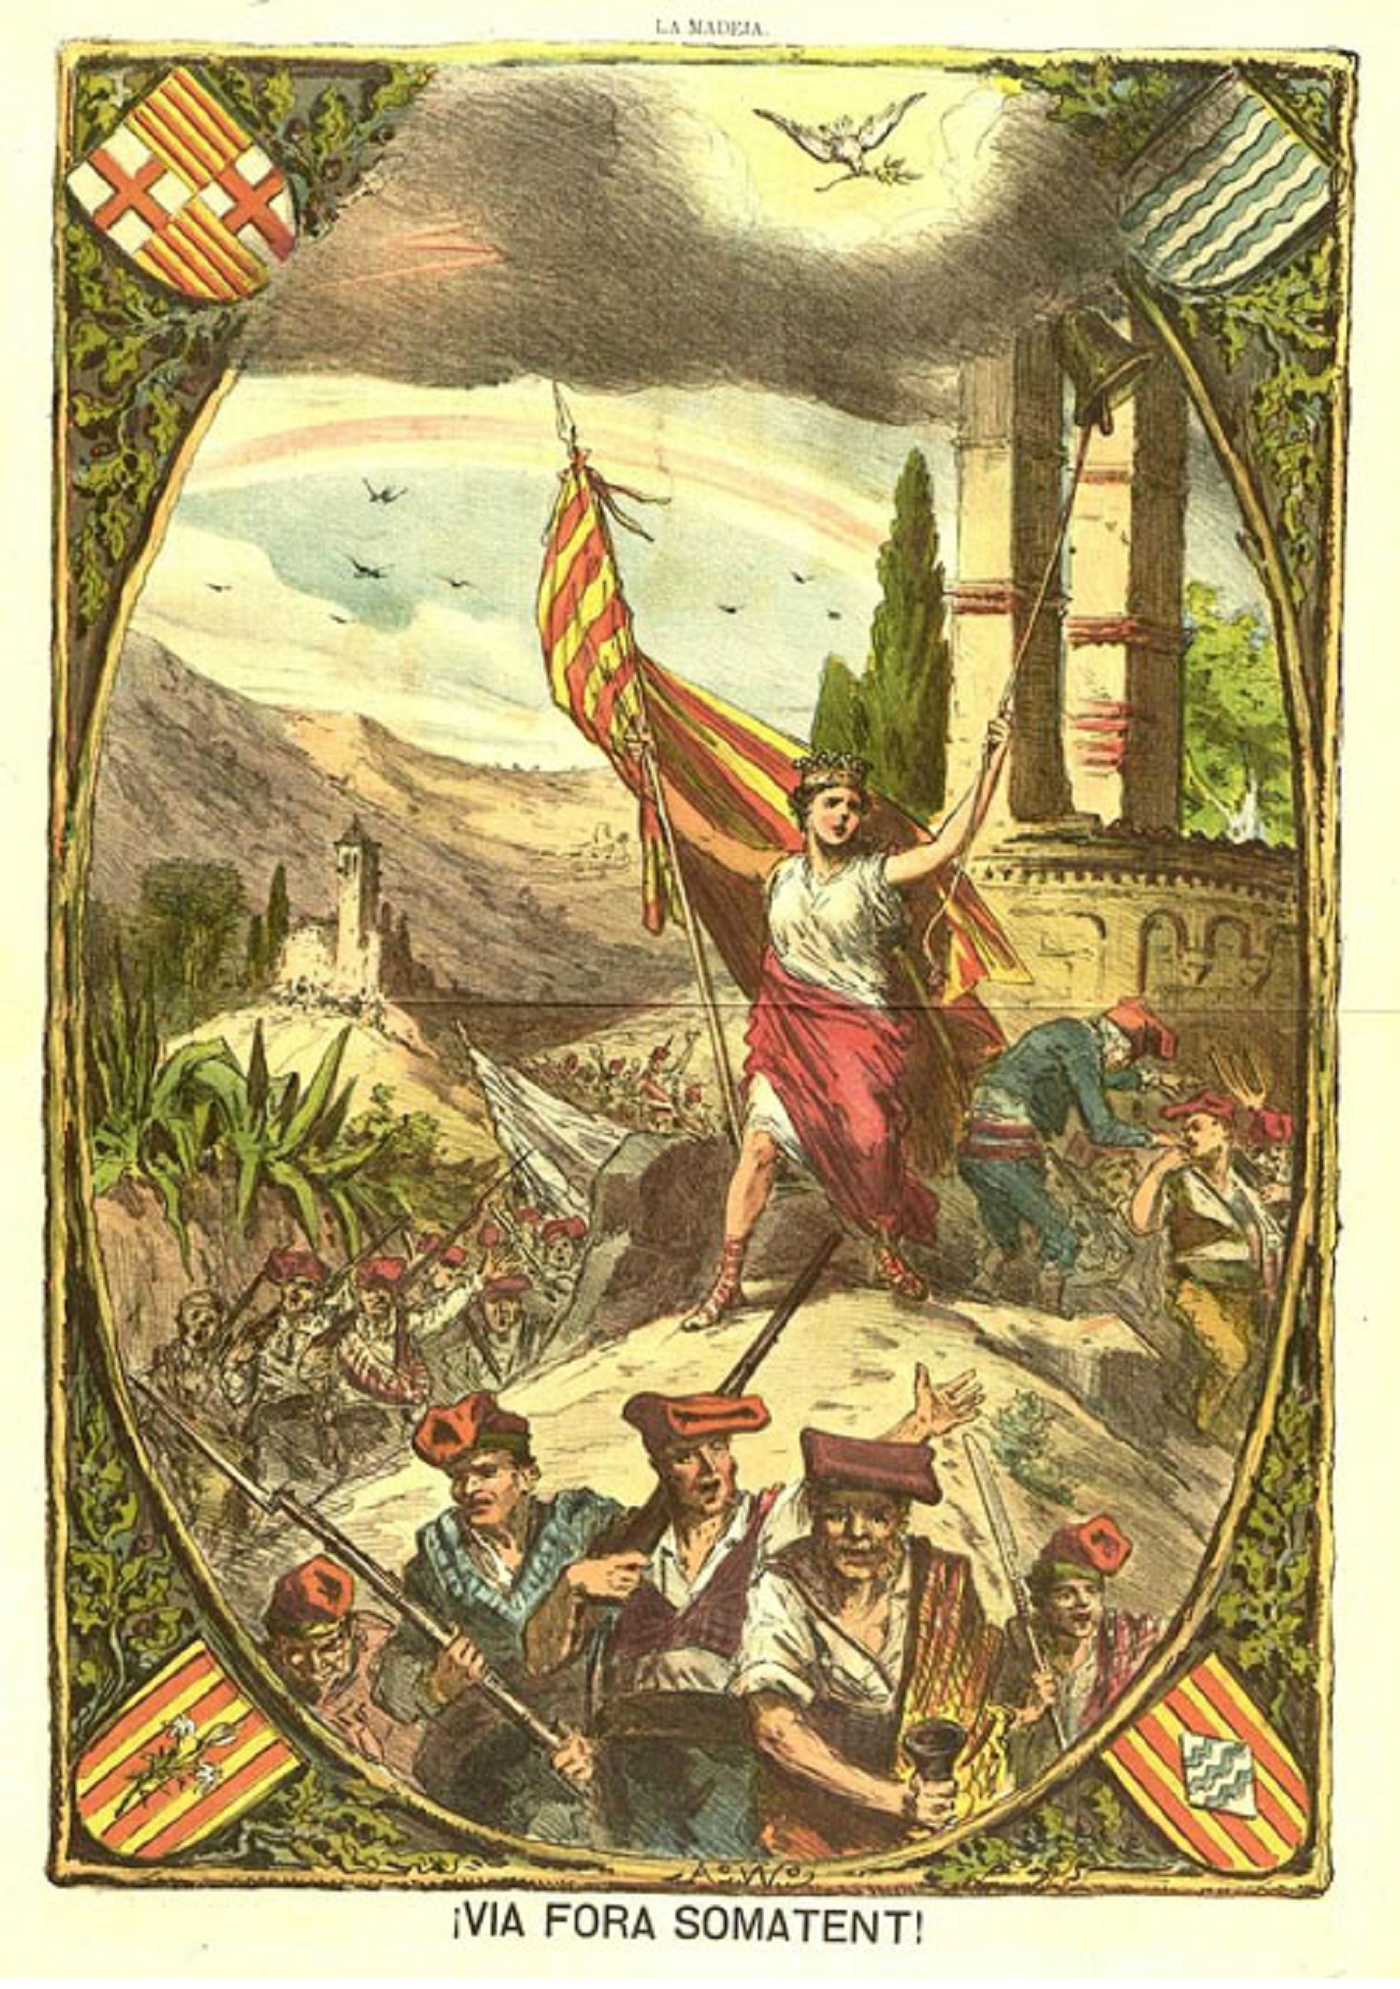 Representació dels Sometents de Catalunya durant el segle XIX. Font Pedres de Girona